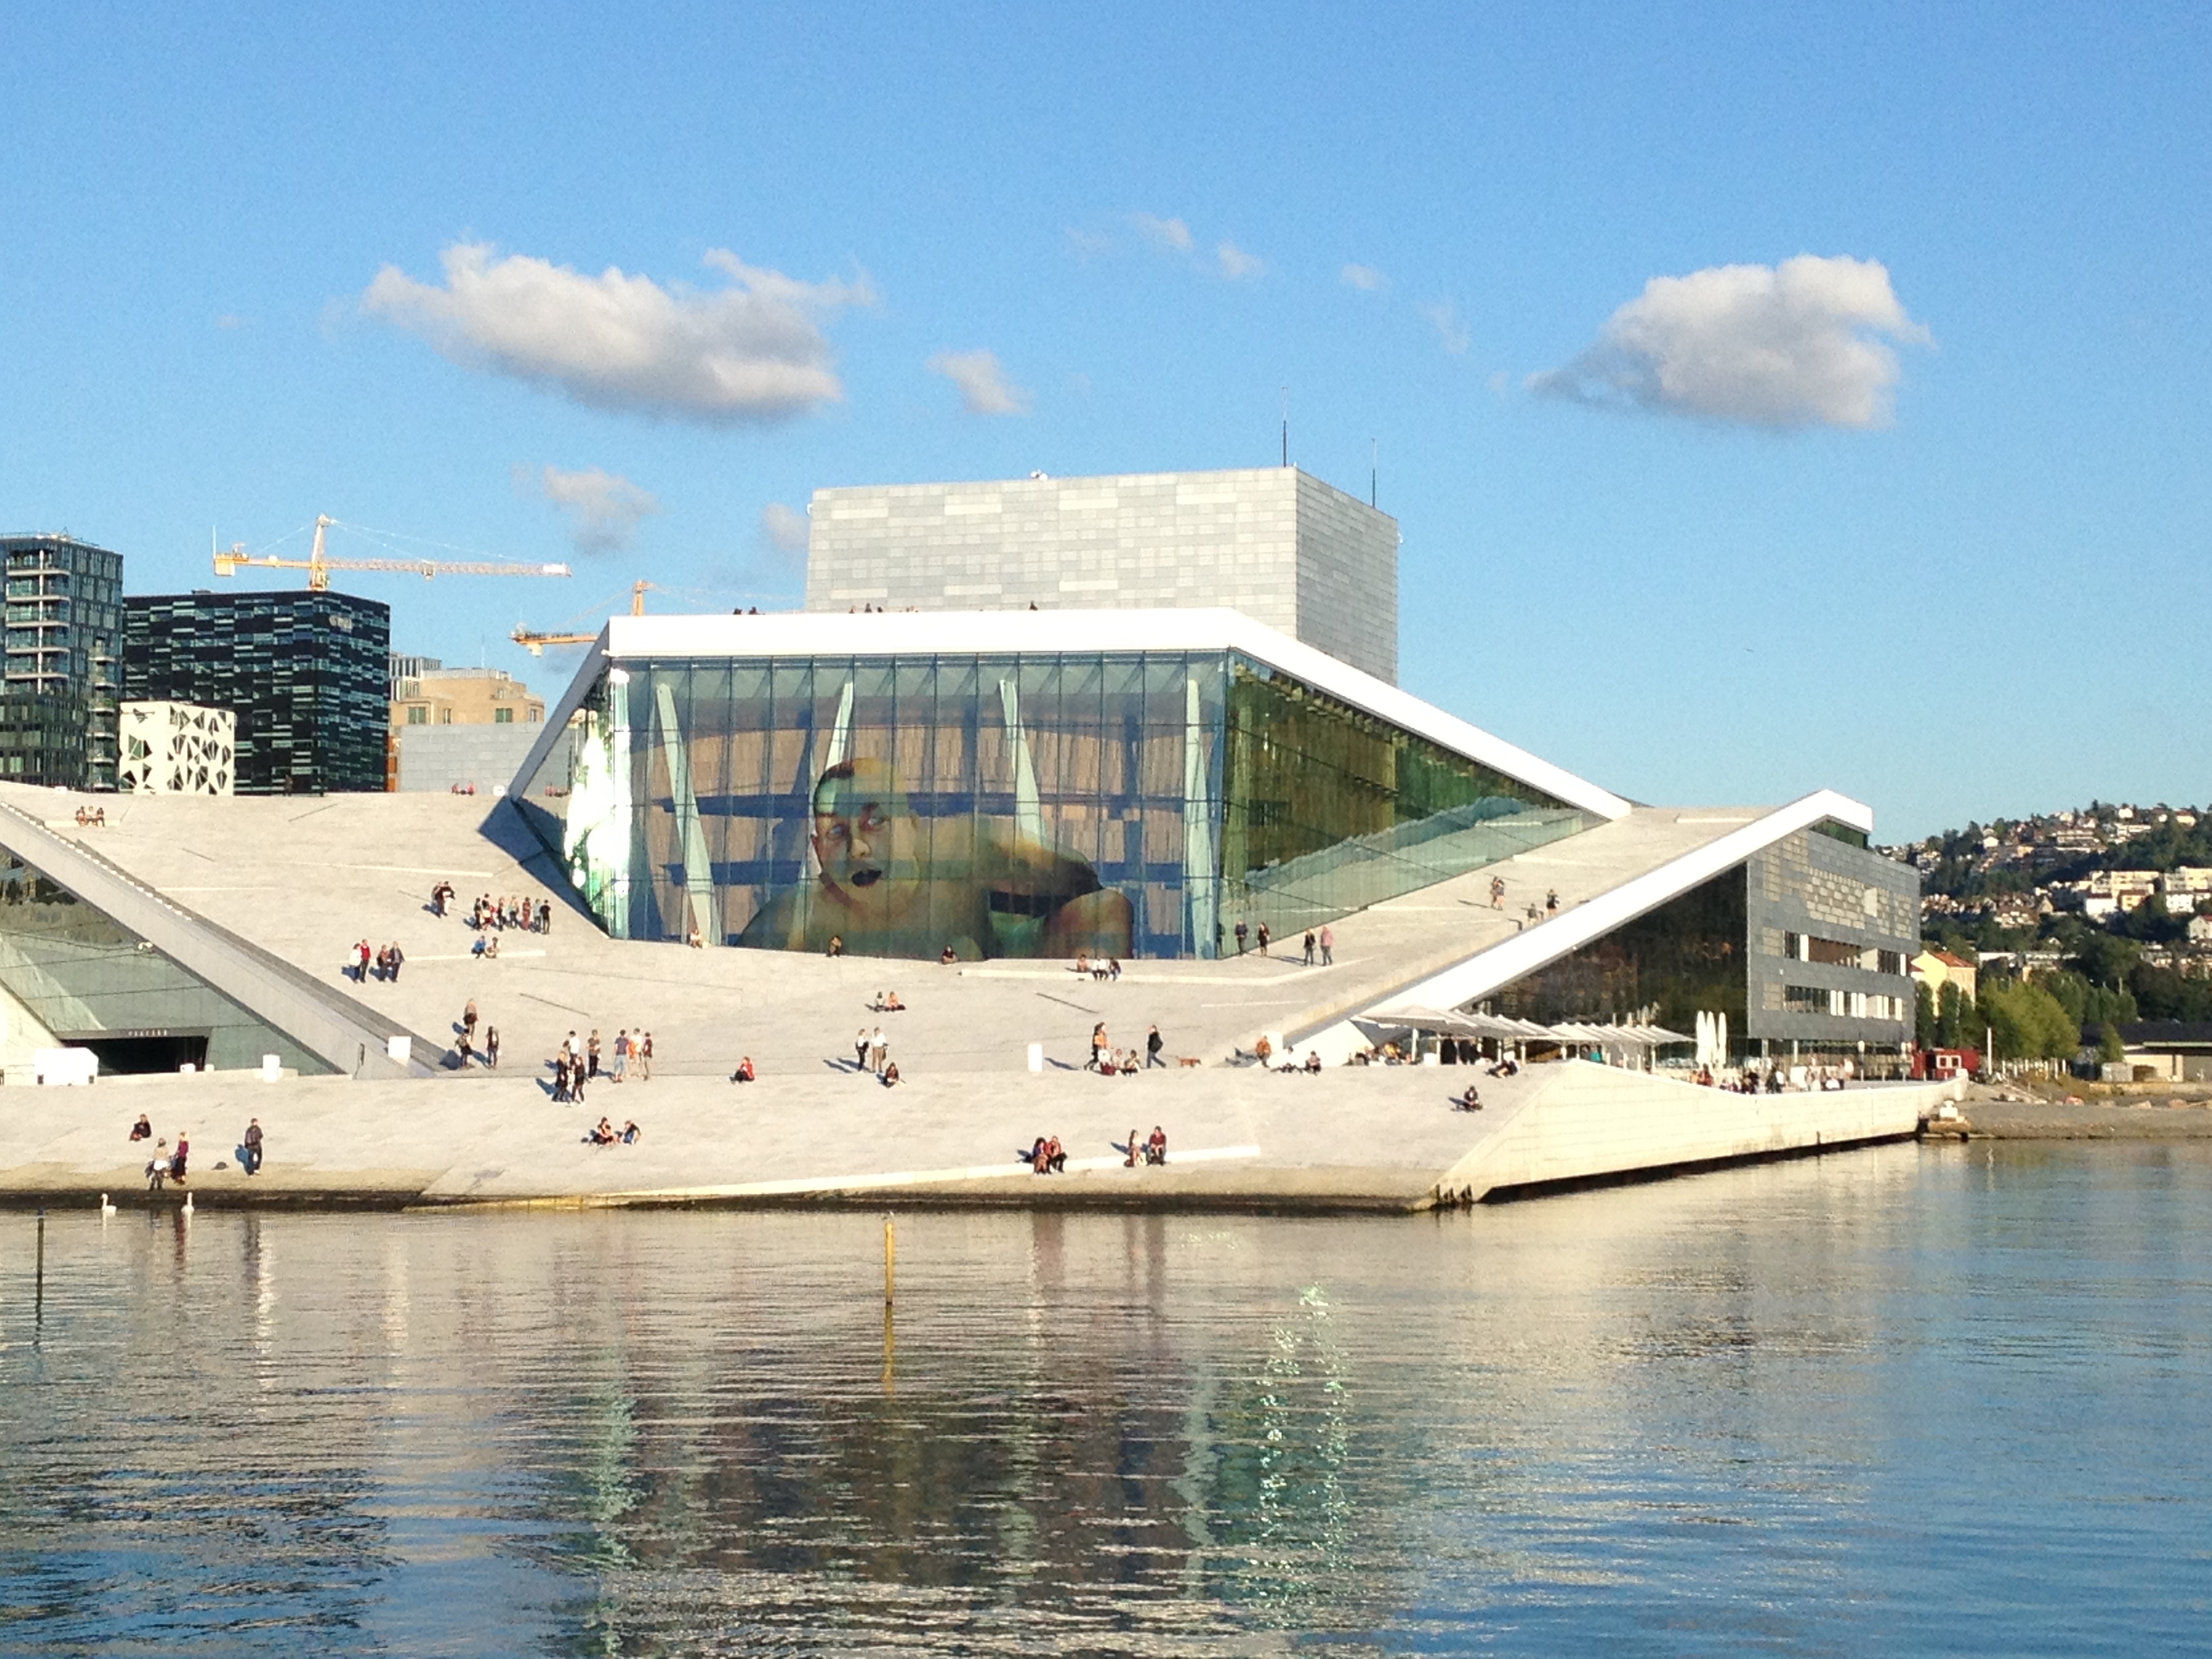 Oslo's new opera